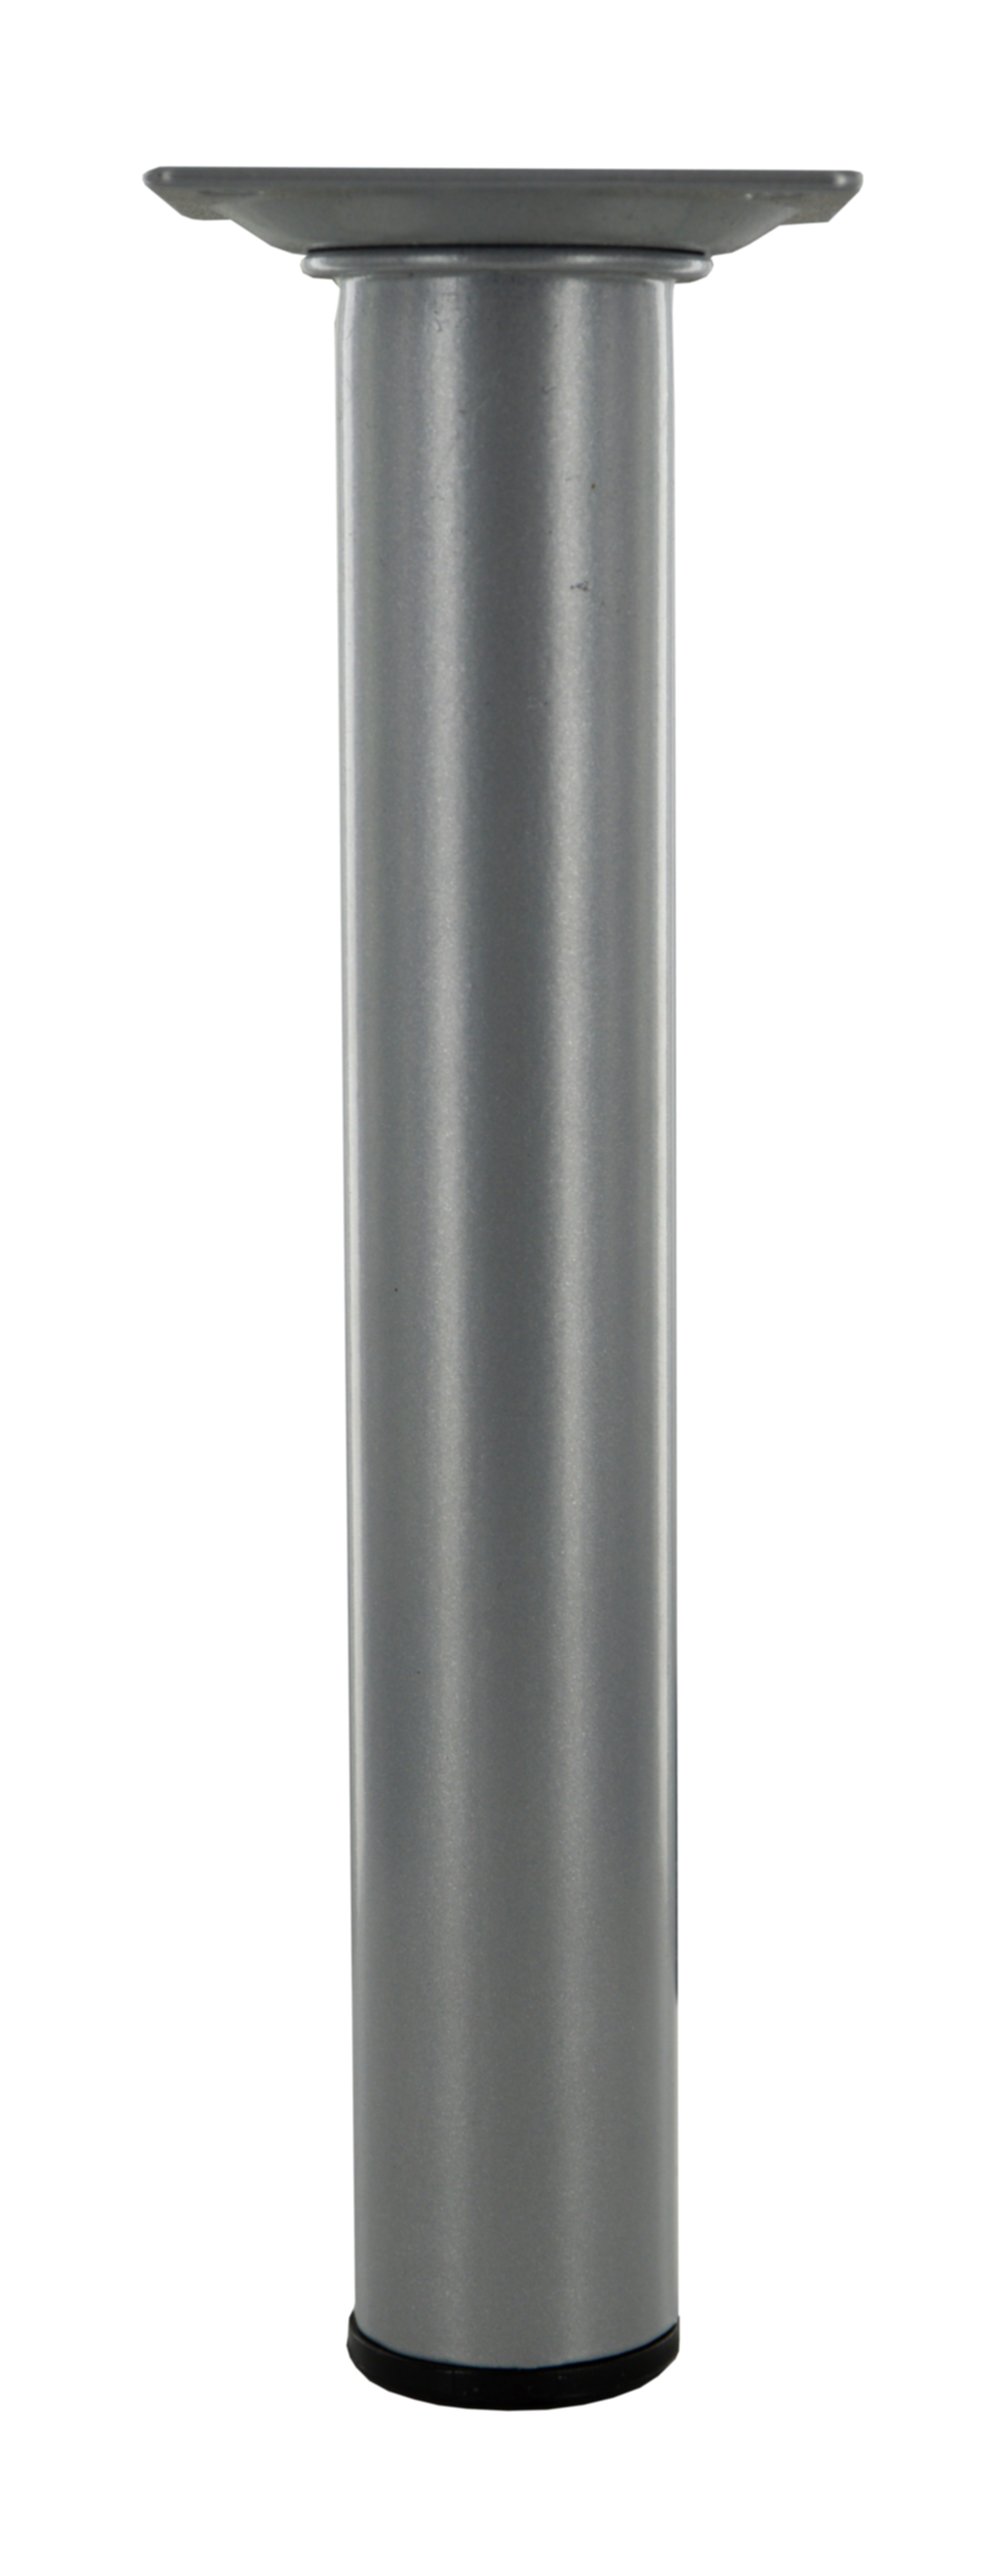 Pied rond acier gris alu, H.200mm D30mm - CIME